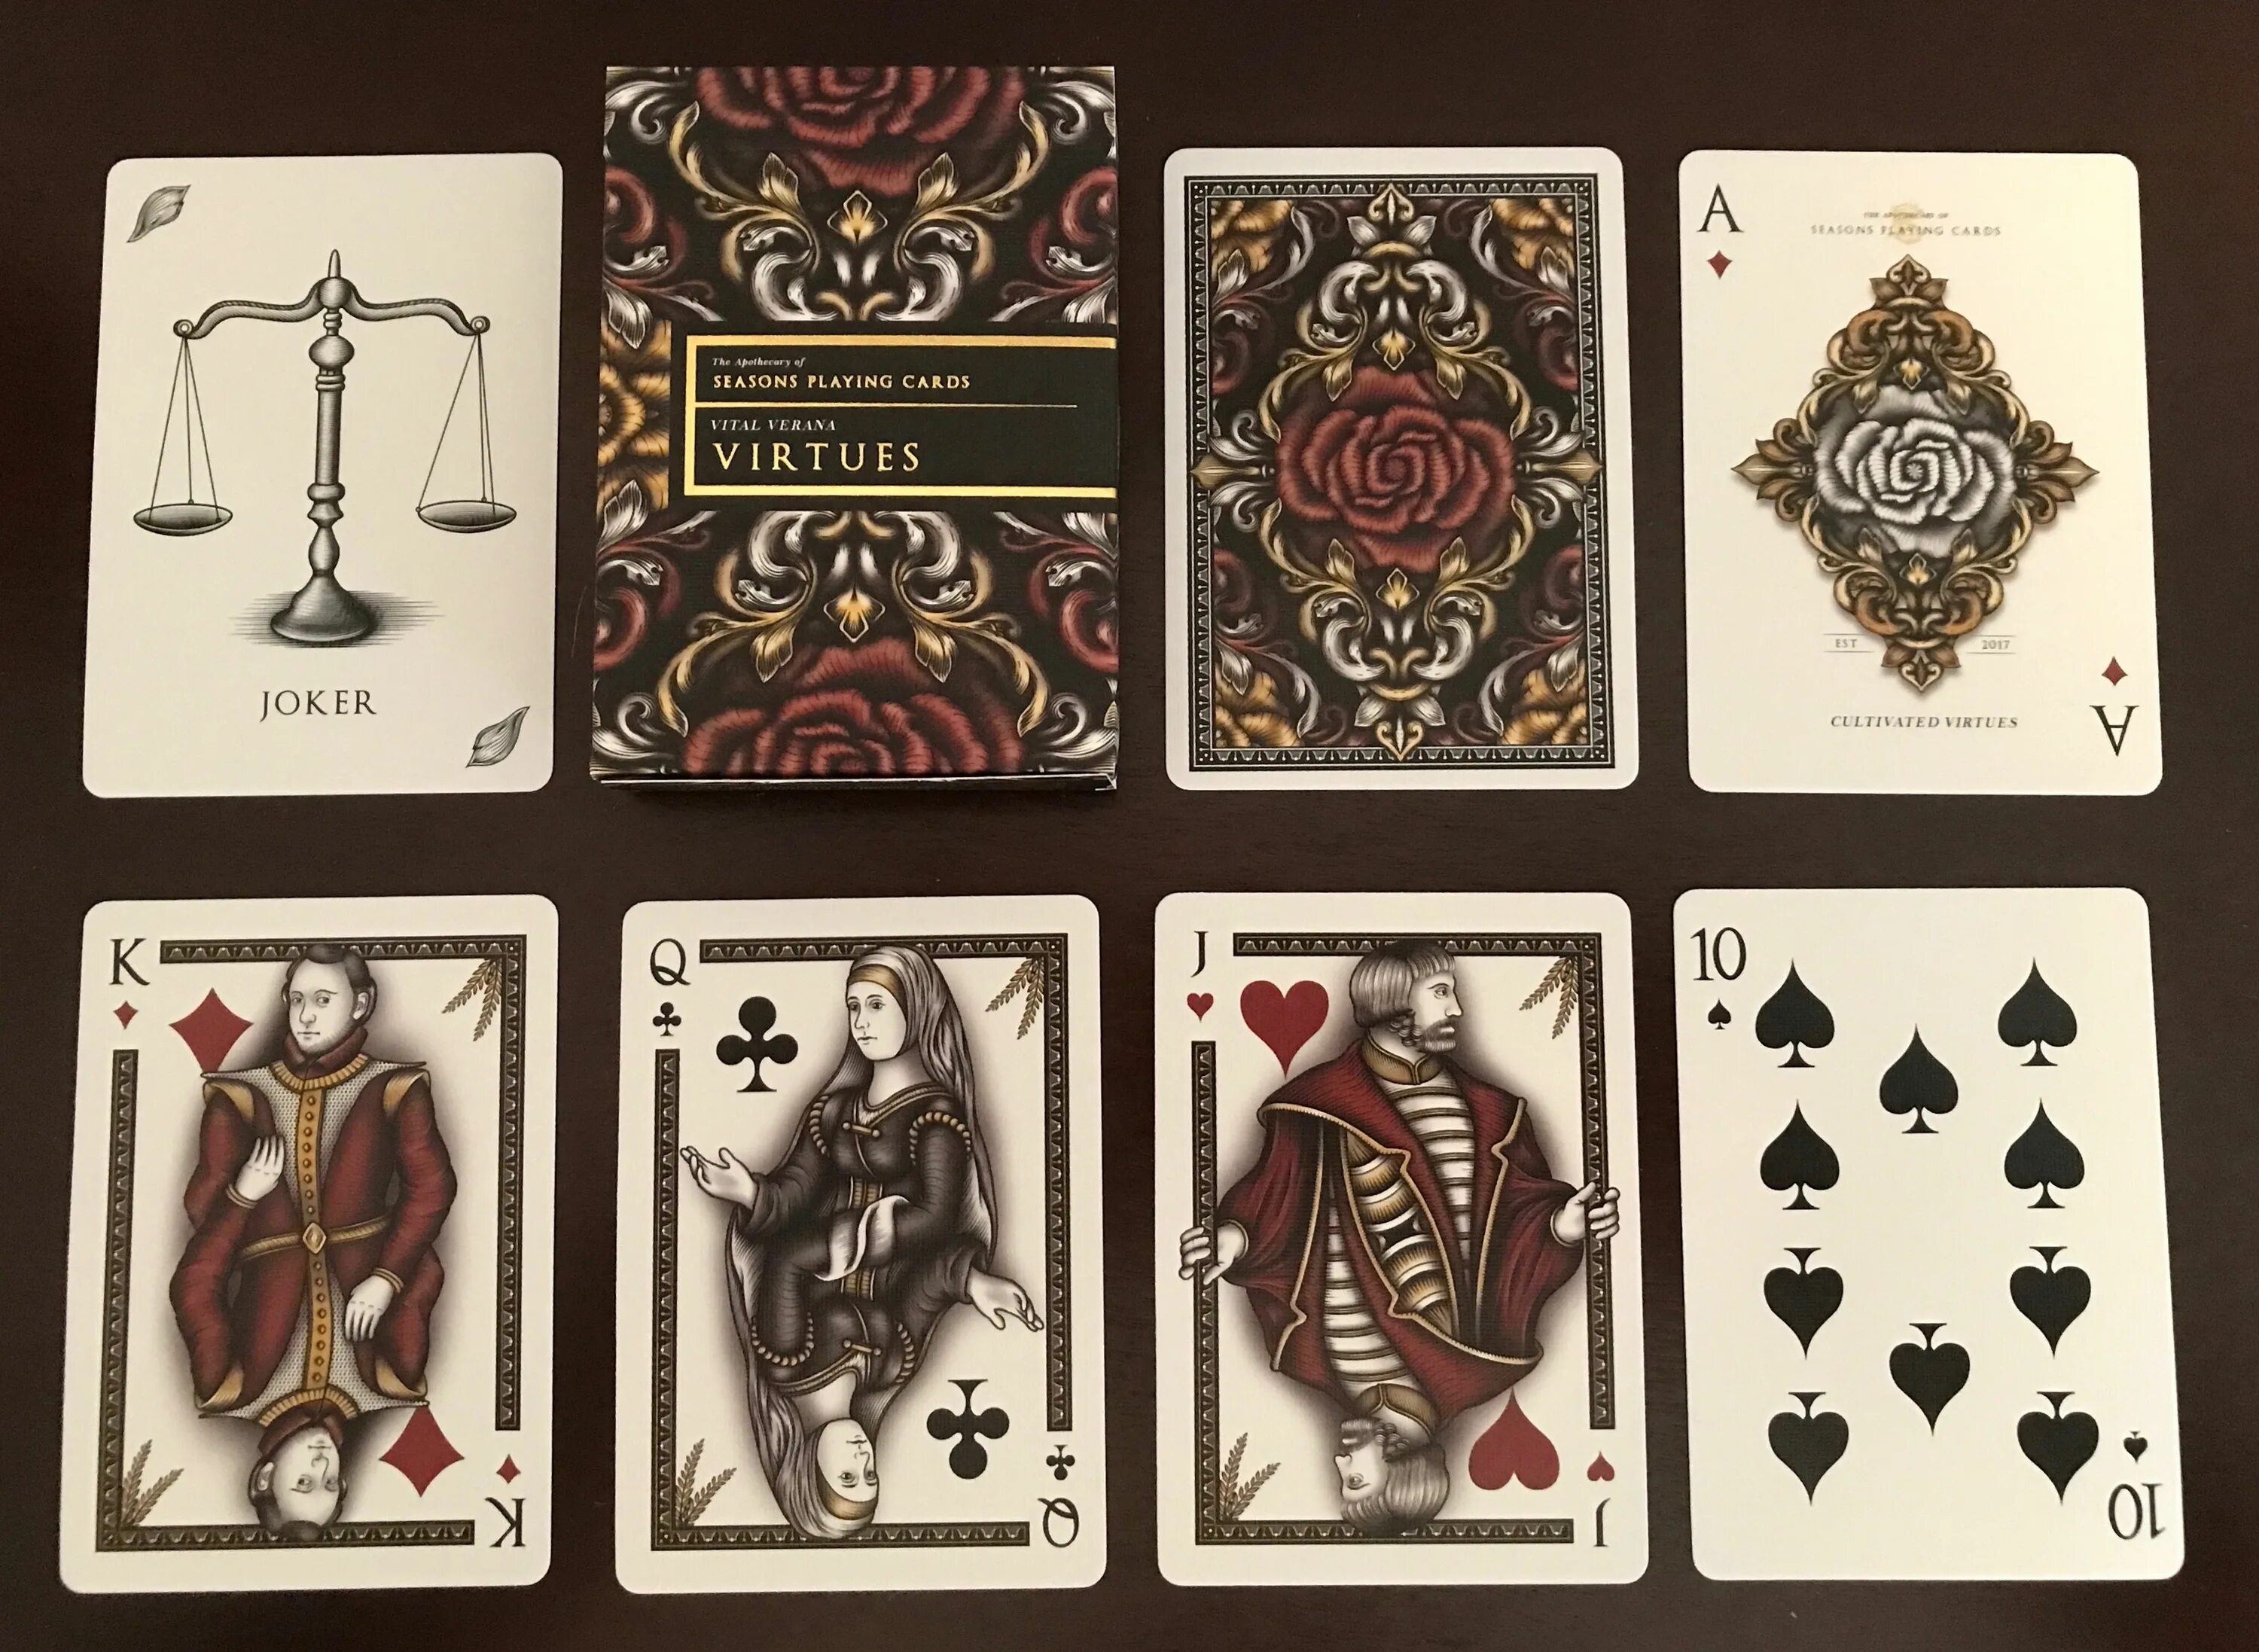 7 пик игра карточная. Карты playing Cards Full Deck. Игральные карты Артифайс. Карты игральные дама. Колода карт с Джокером.